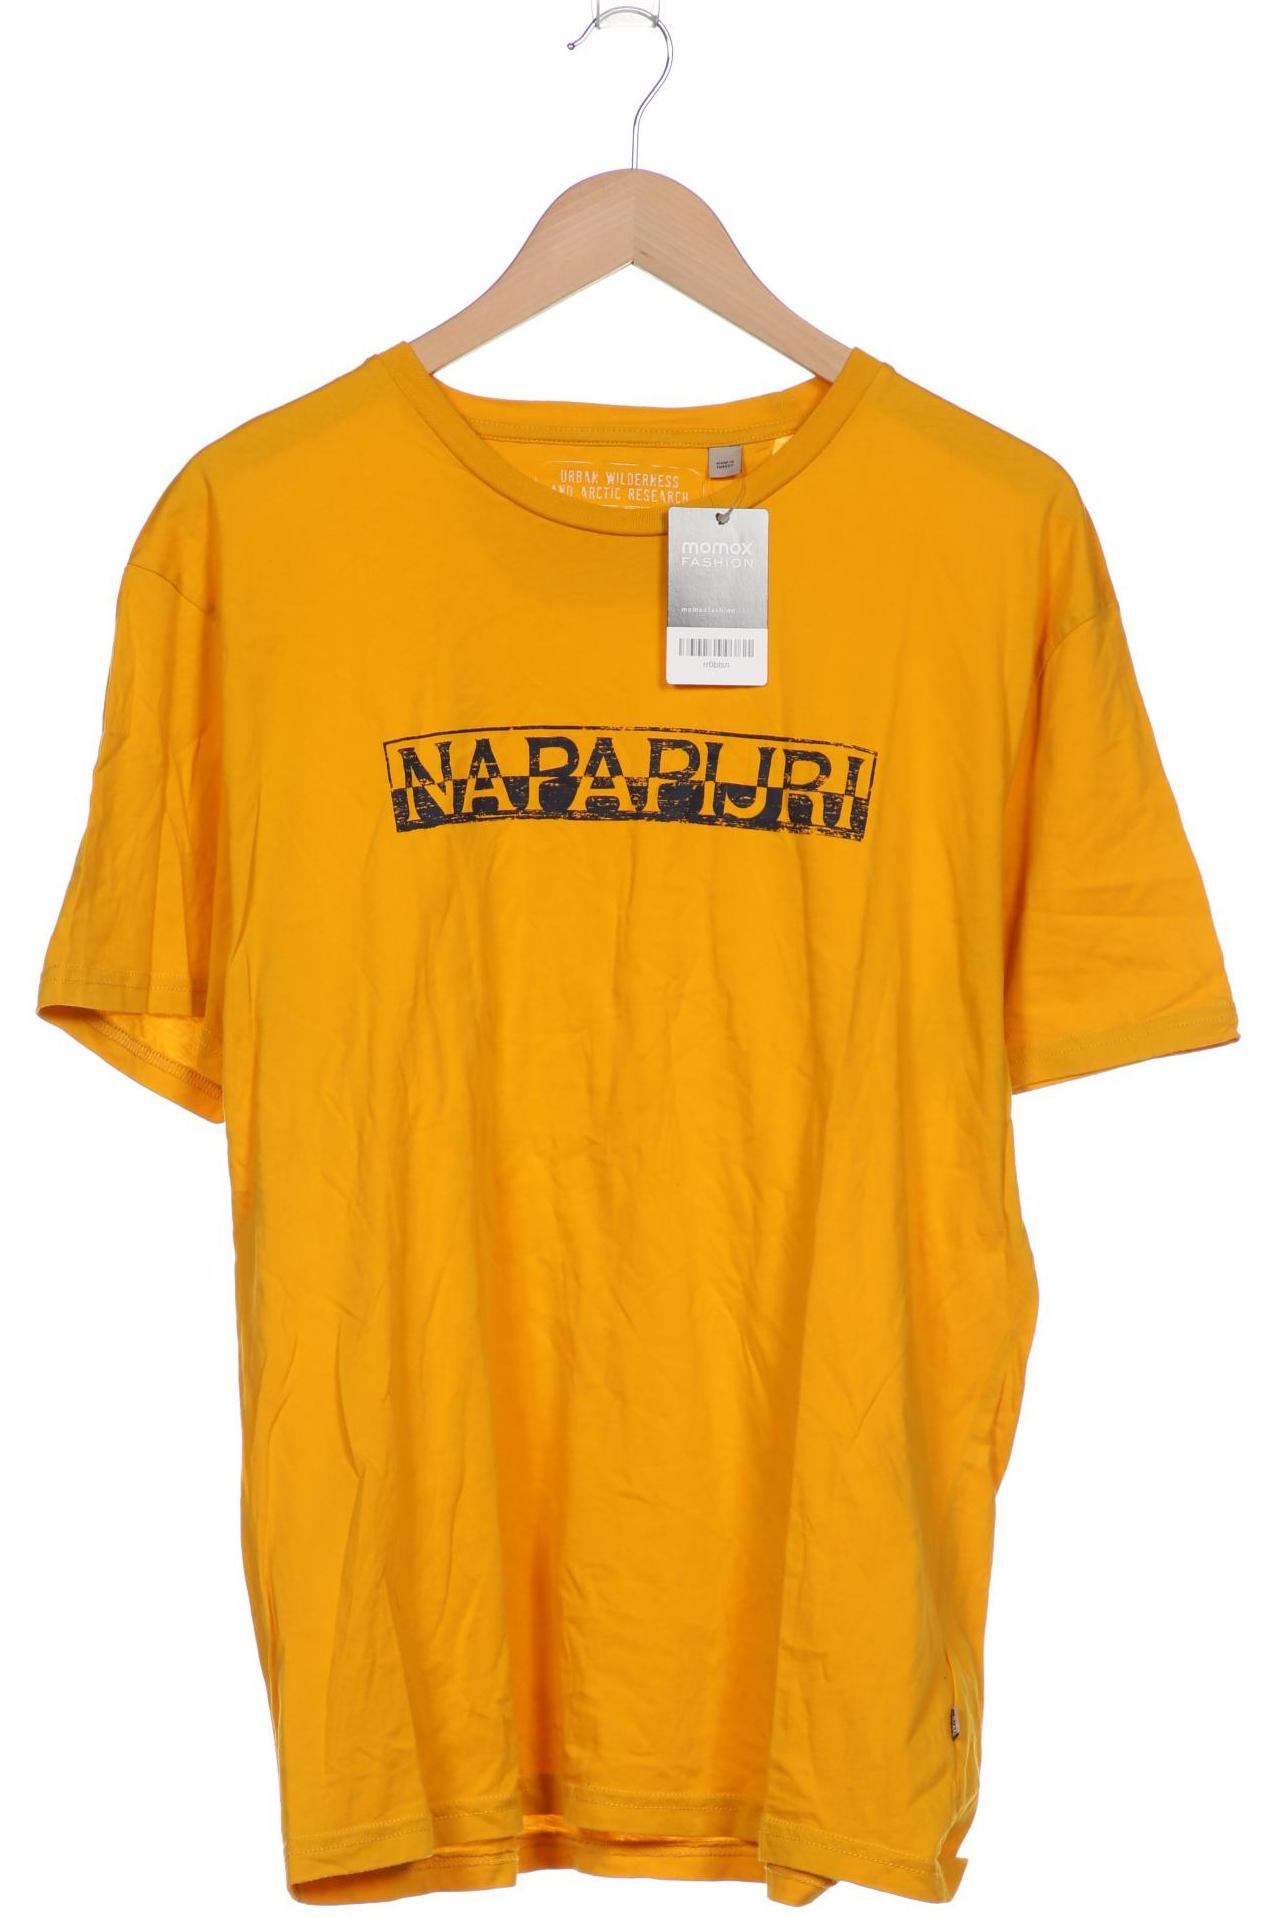 Napapijri Herren T-Shirt, gelb von Napapijri